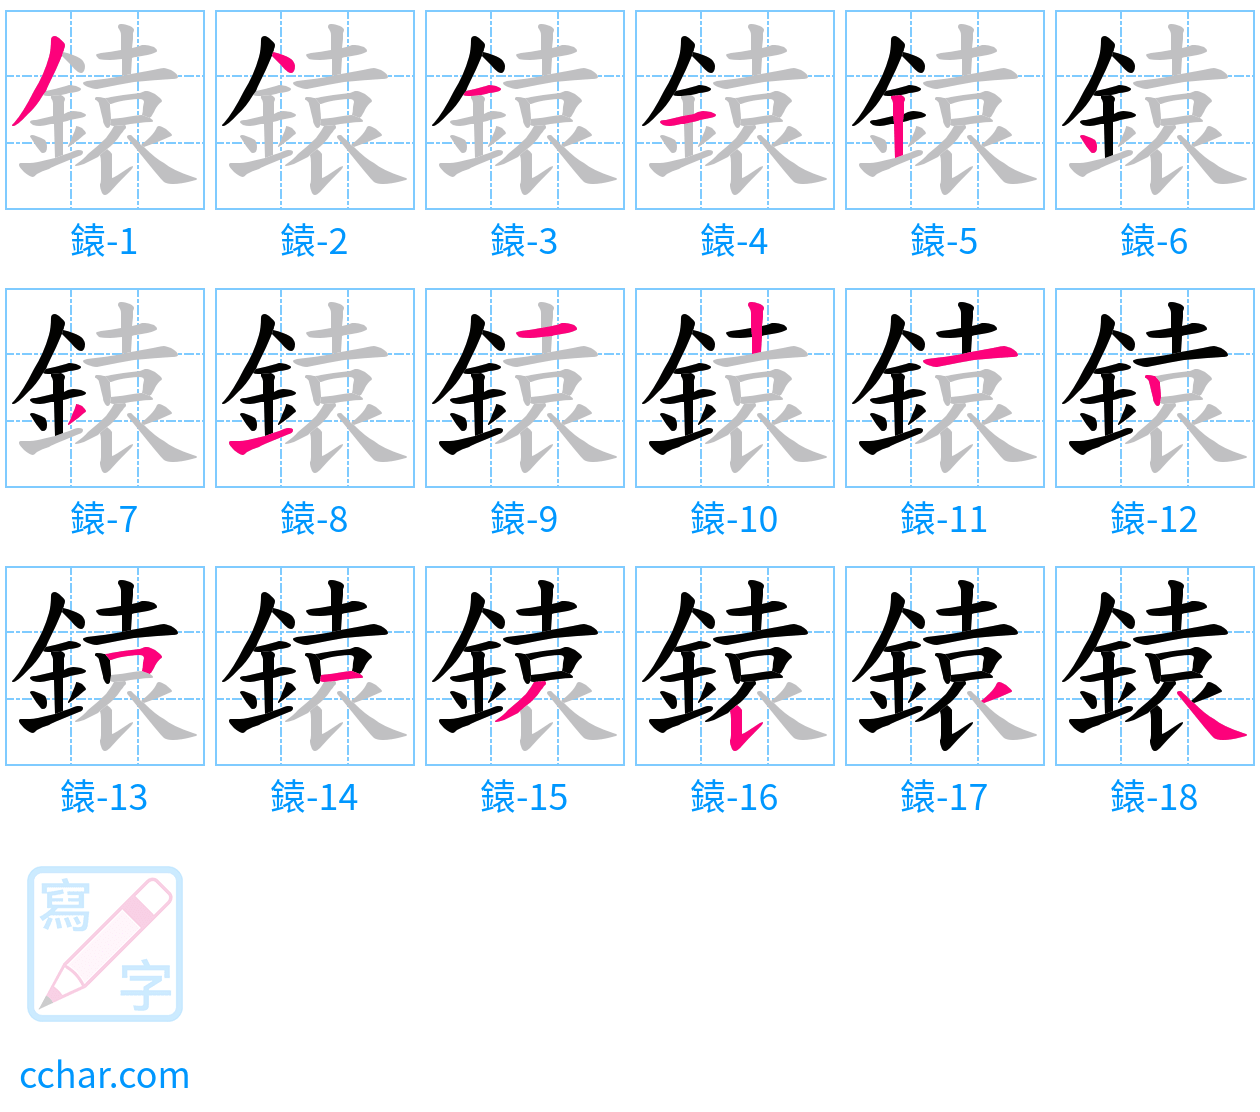 鎱 stroke order step-by-step diagram